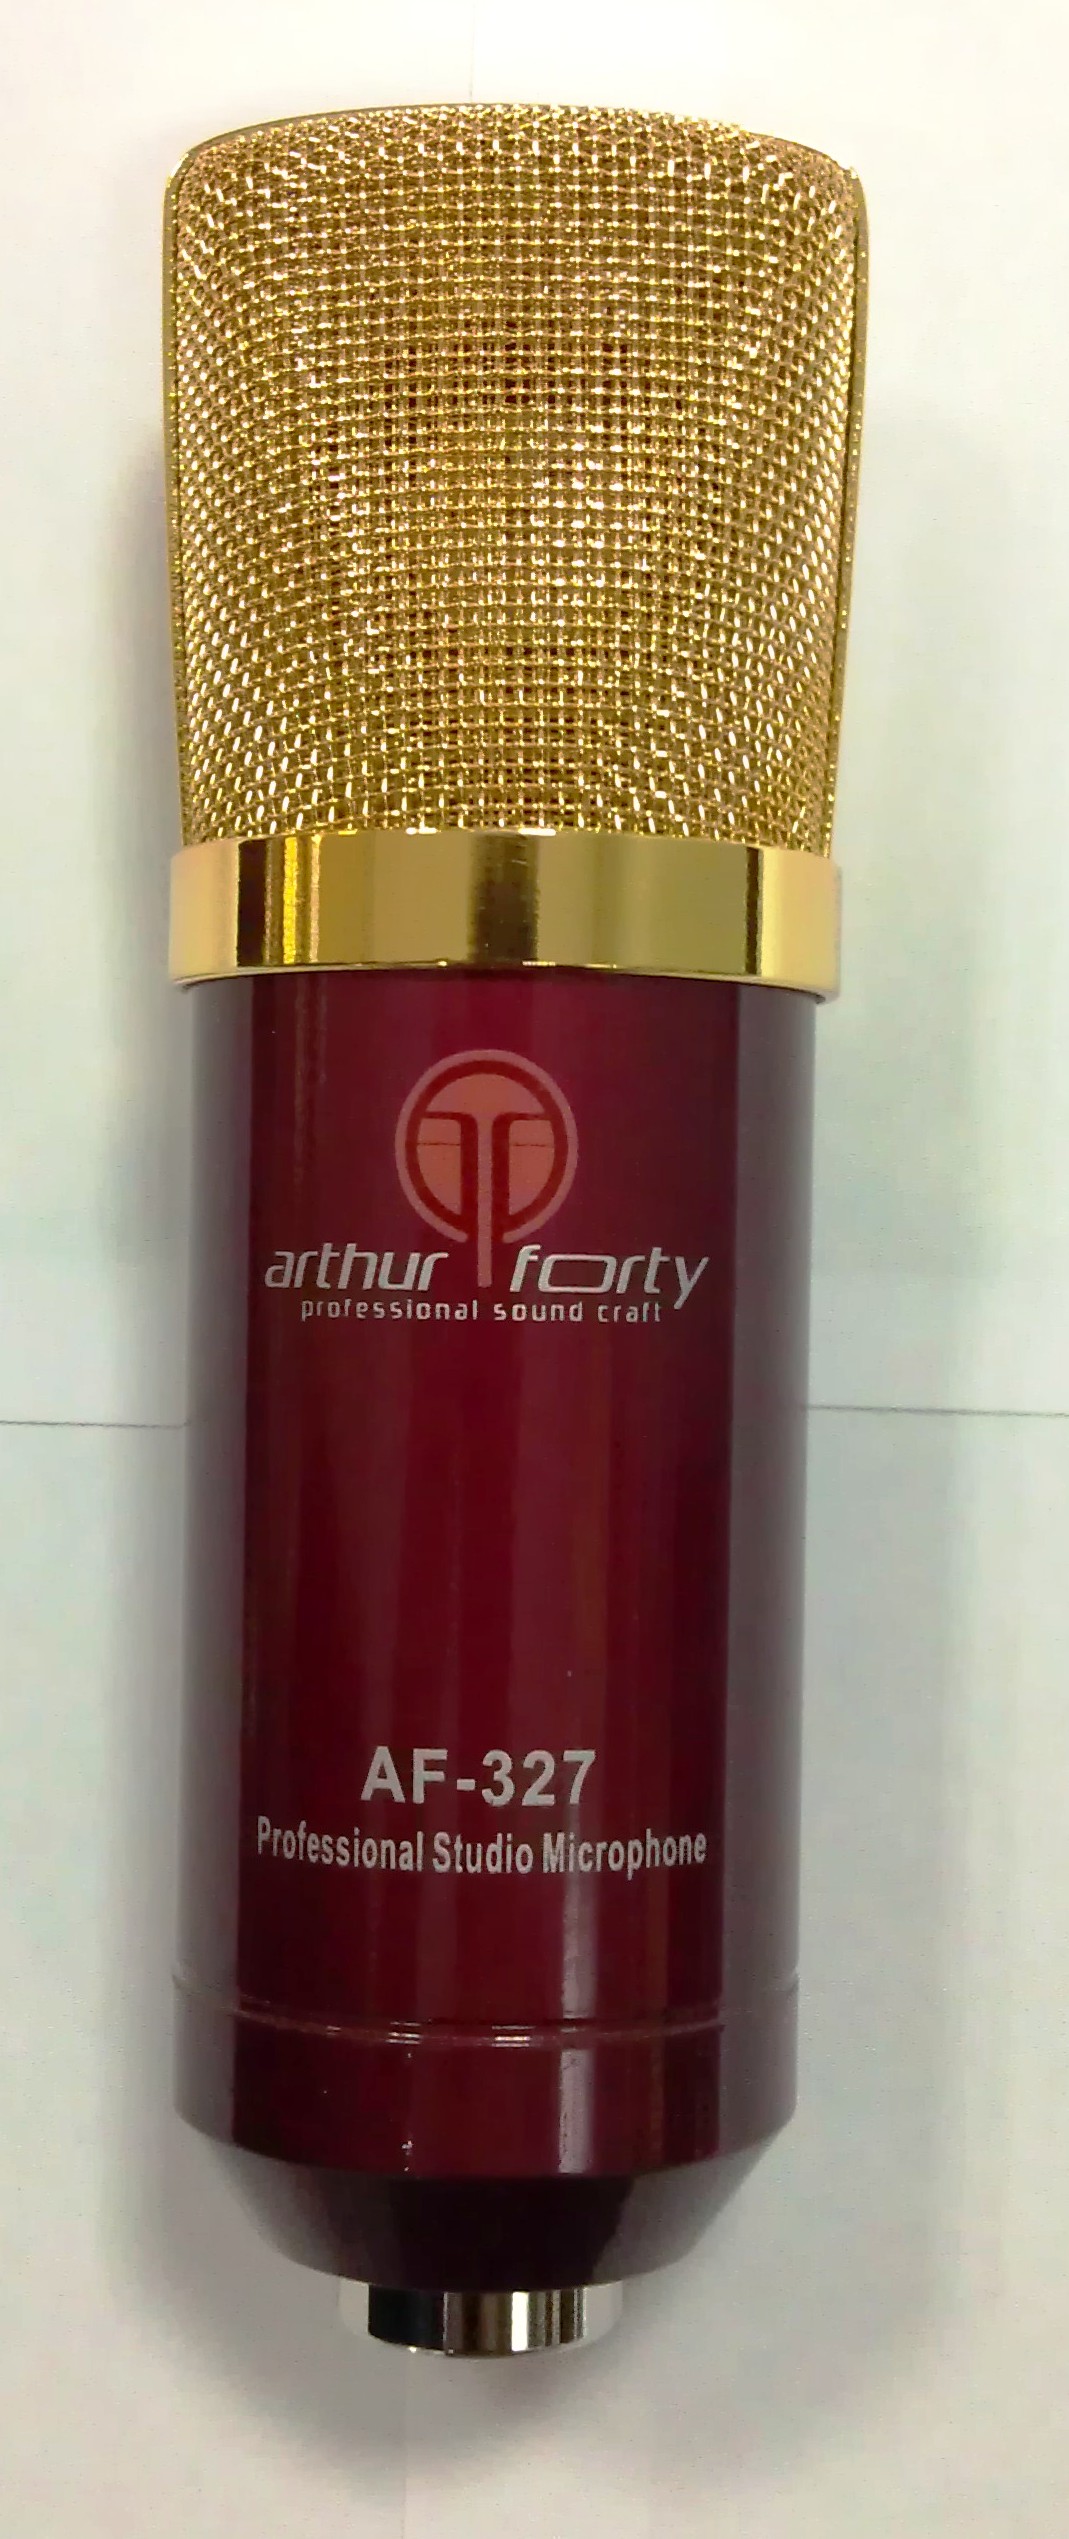 Студийные микрофоны Arthur Forty AF-327 PSC (красный) king arthur knight s tale pc